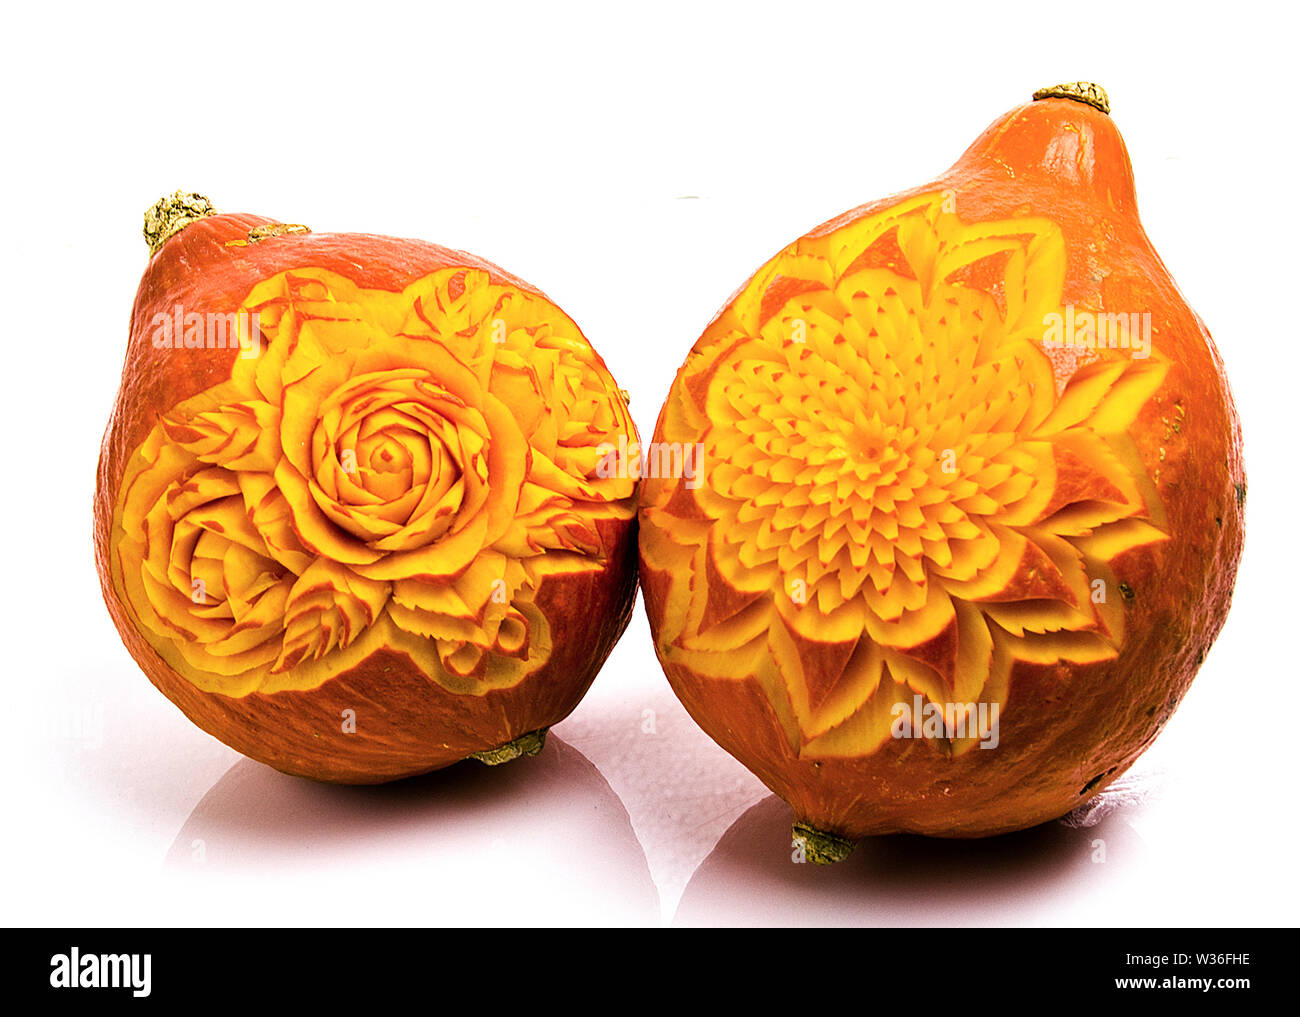 L'art des aliments et légumes melons pumpkin carving par artiste culinaire angkana neumayer d'autriche Banque D'Images